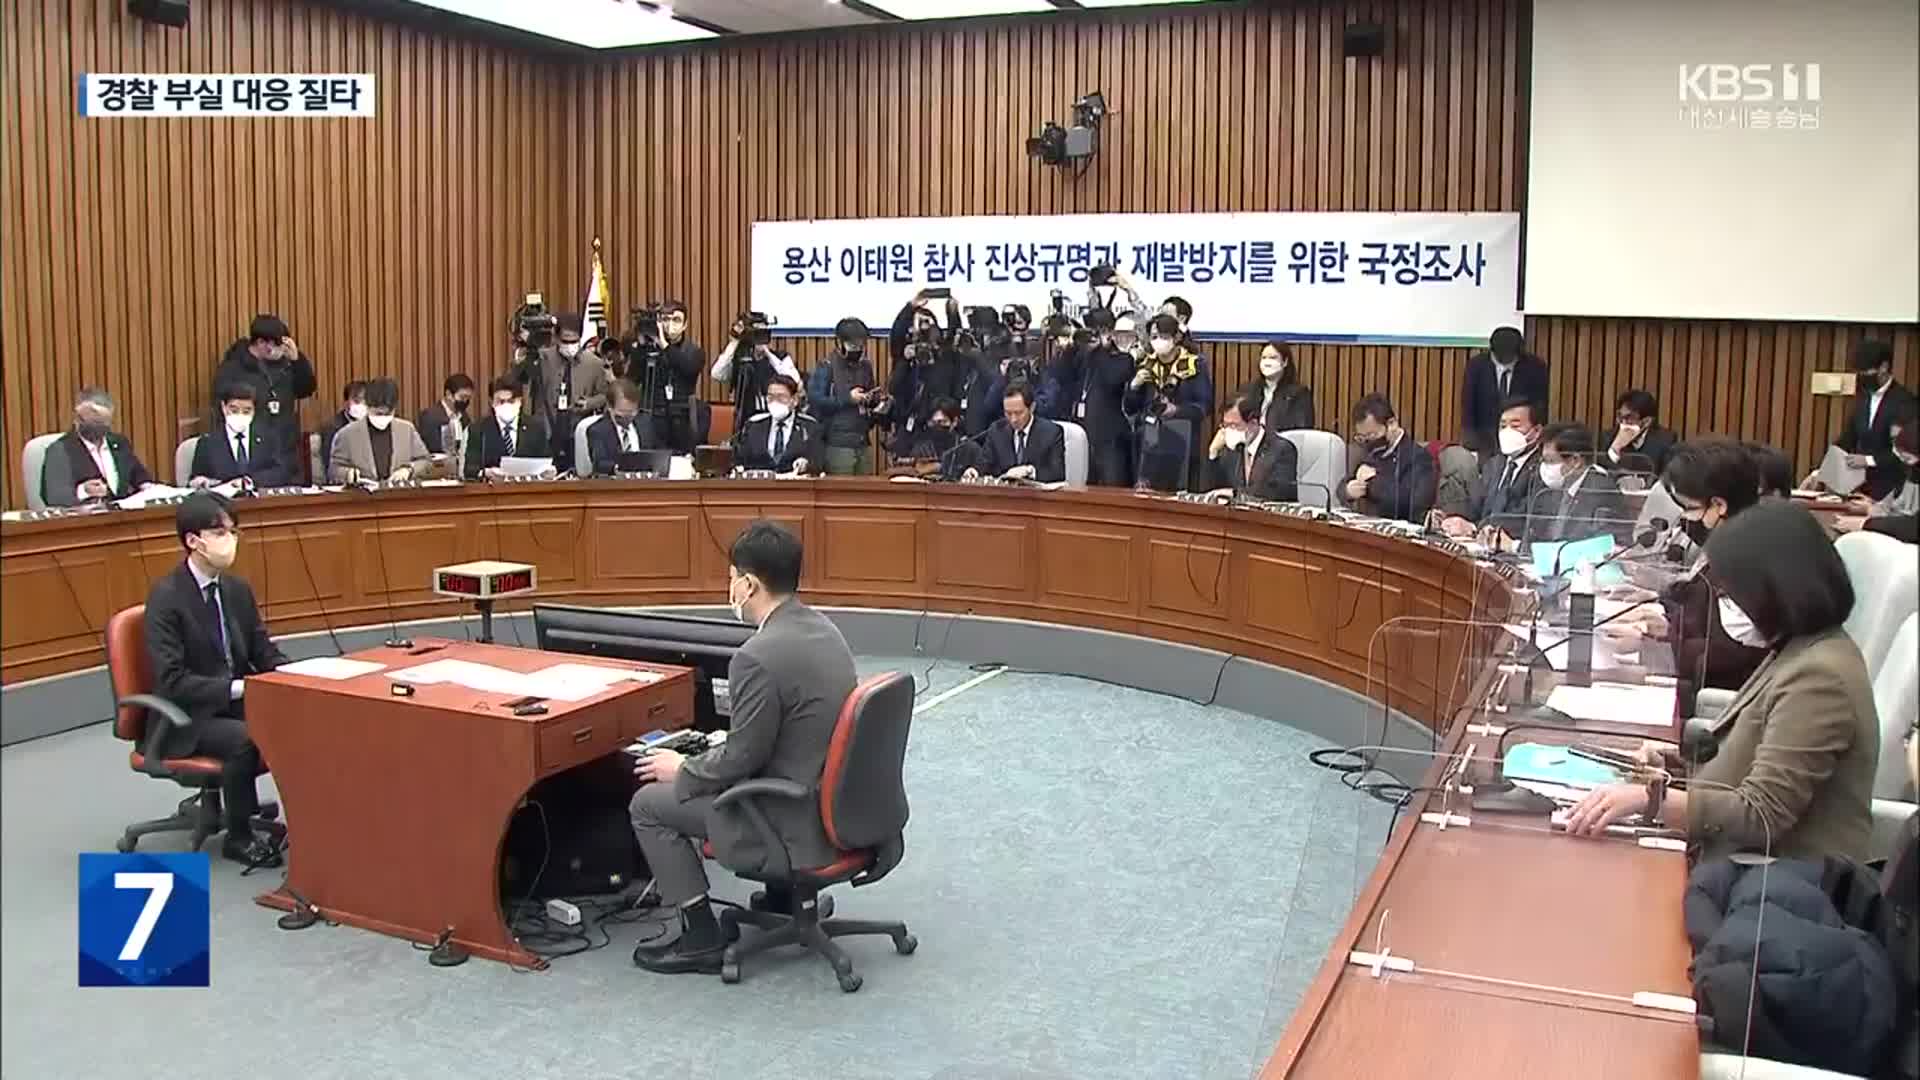 두 달여 만의 첫 청문회…경찰청장 “참사 당일 음주” 인정